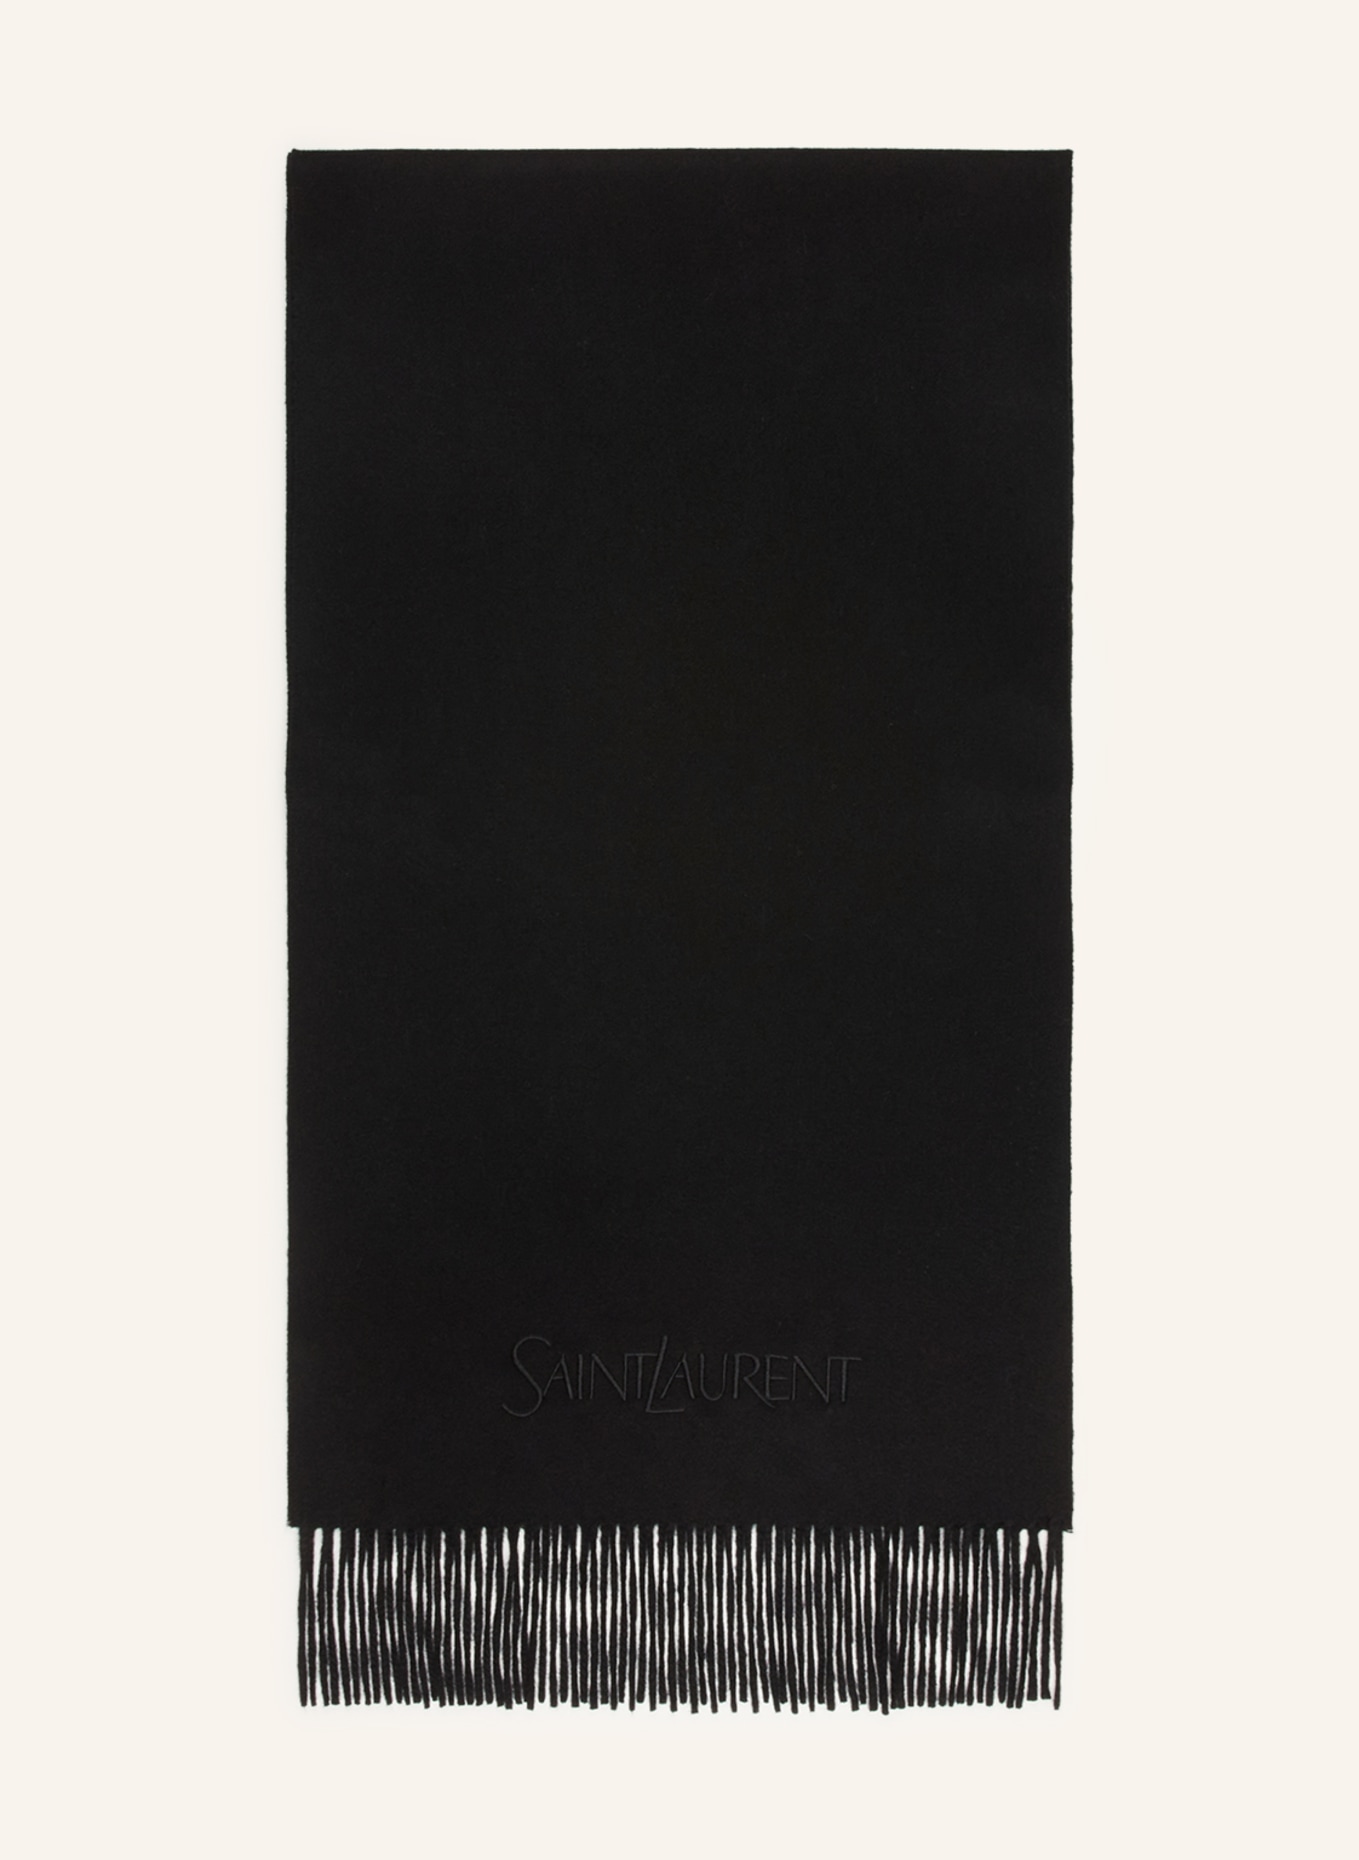 SAINT LAURENT Cashmere-Schal, Farbe: SCHWARZ (Bild 1)